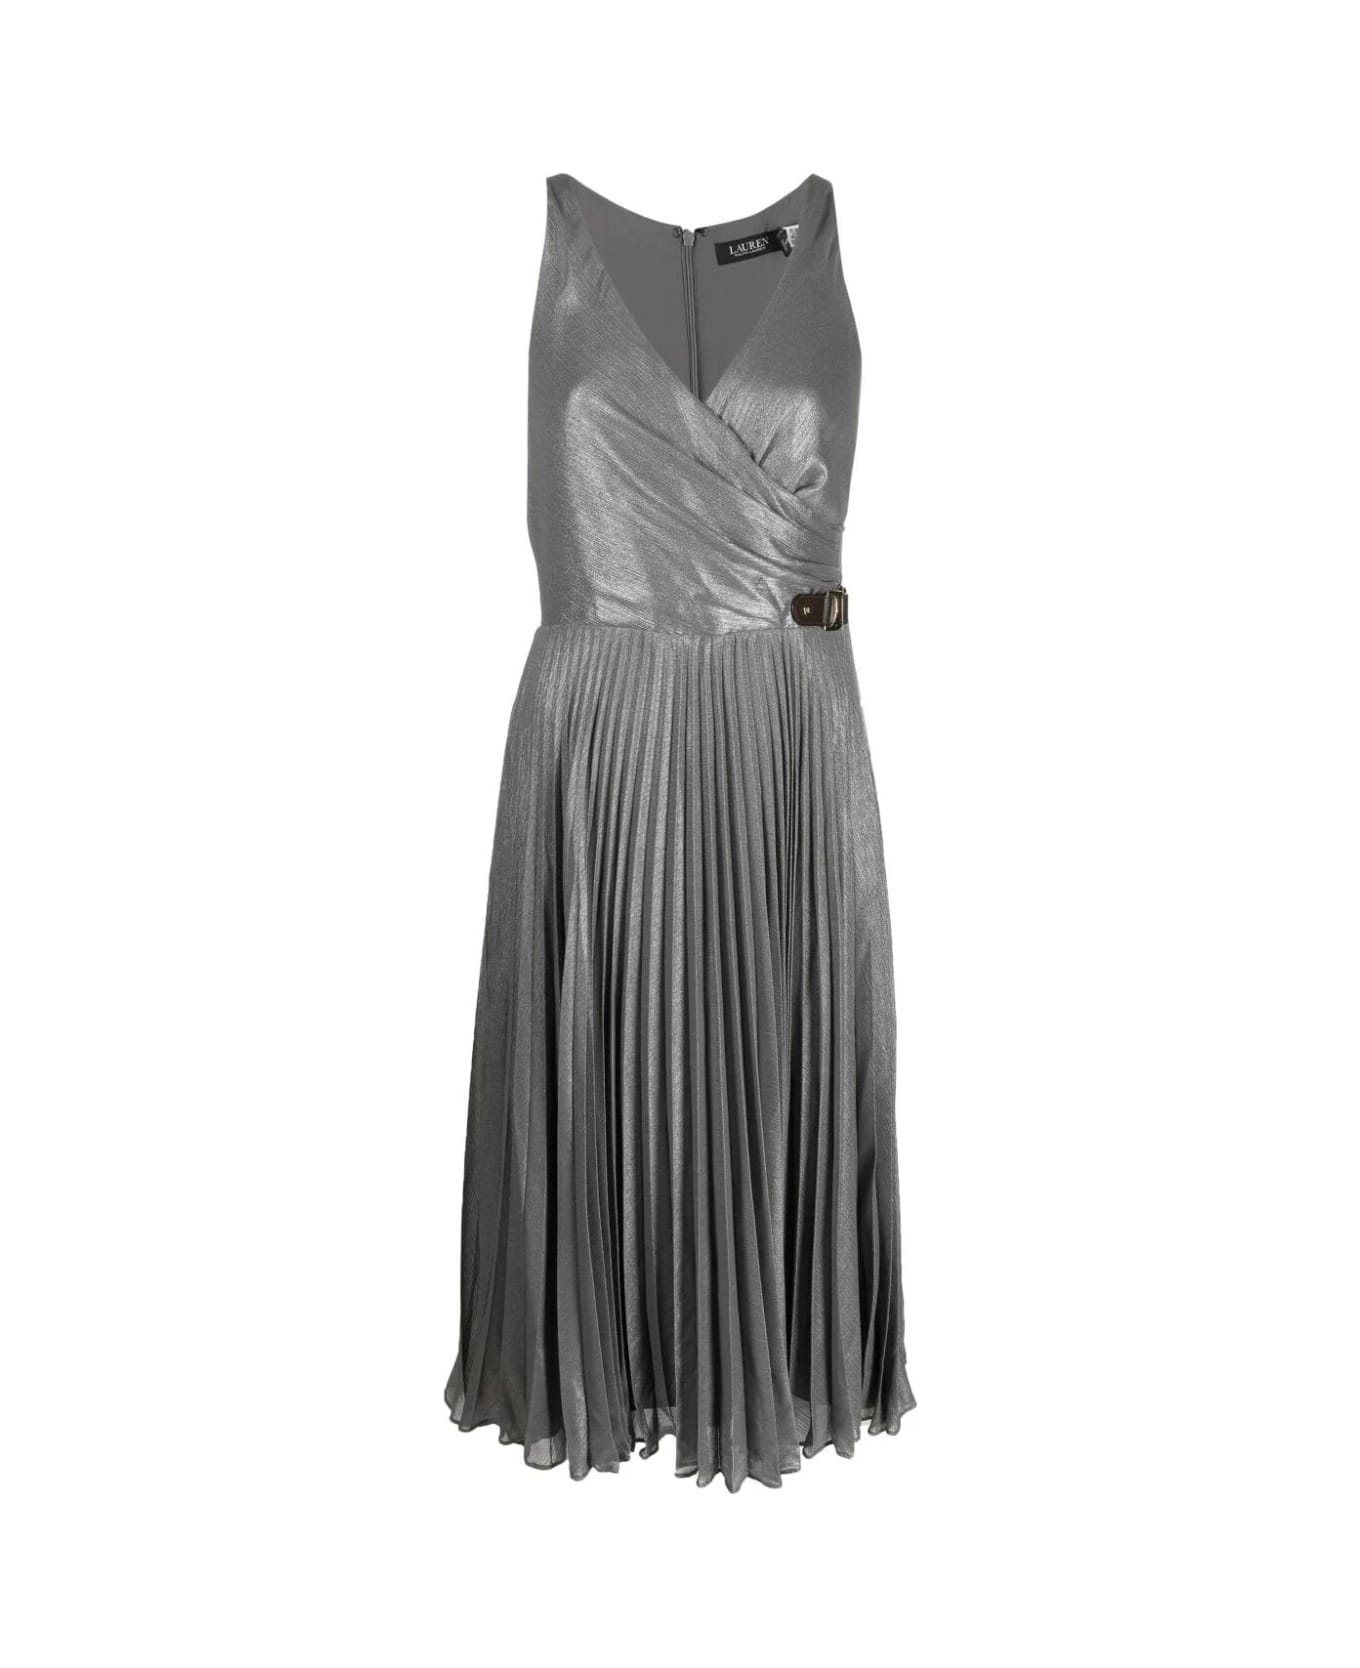 Ralph Lauren Dreshawn Sleeveless Cocktail Midi Dress - Modern Slate Silver Foil